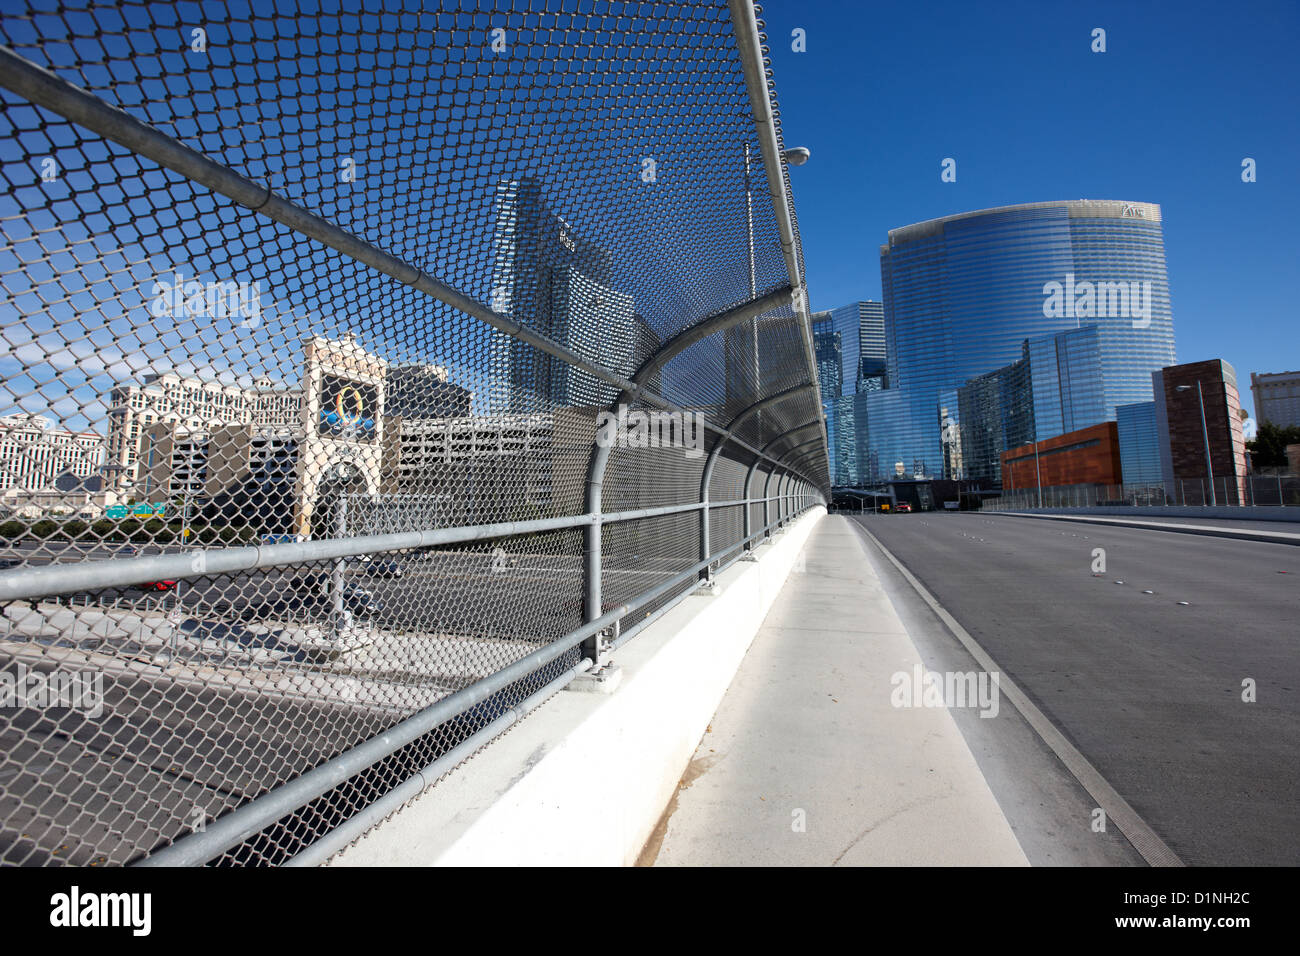 Clôture de sécurité et écran plus allée i-15 l'interstate à Las Vegas NEVADA USA Banque D'Images